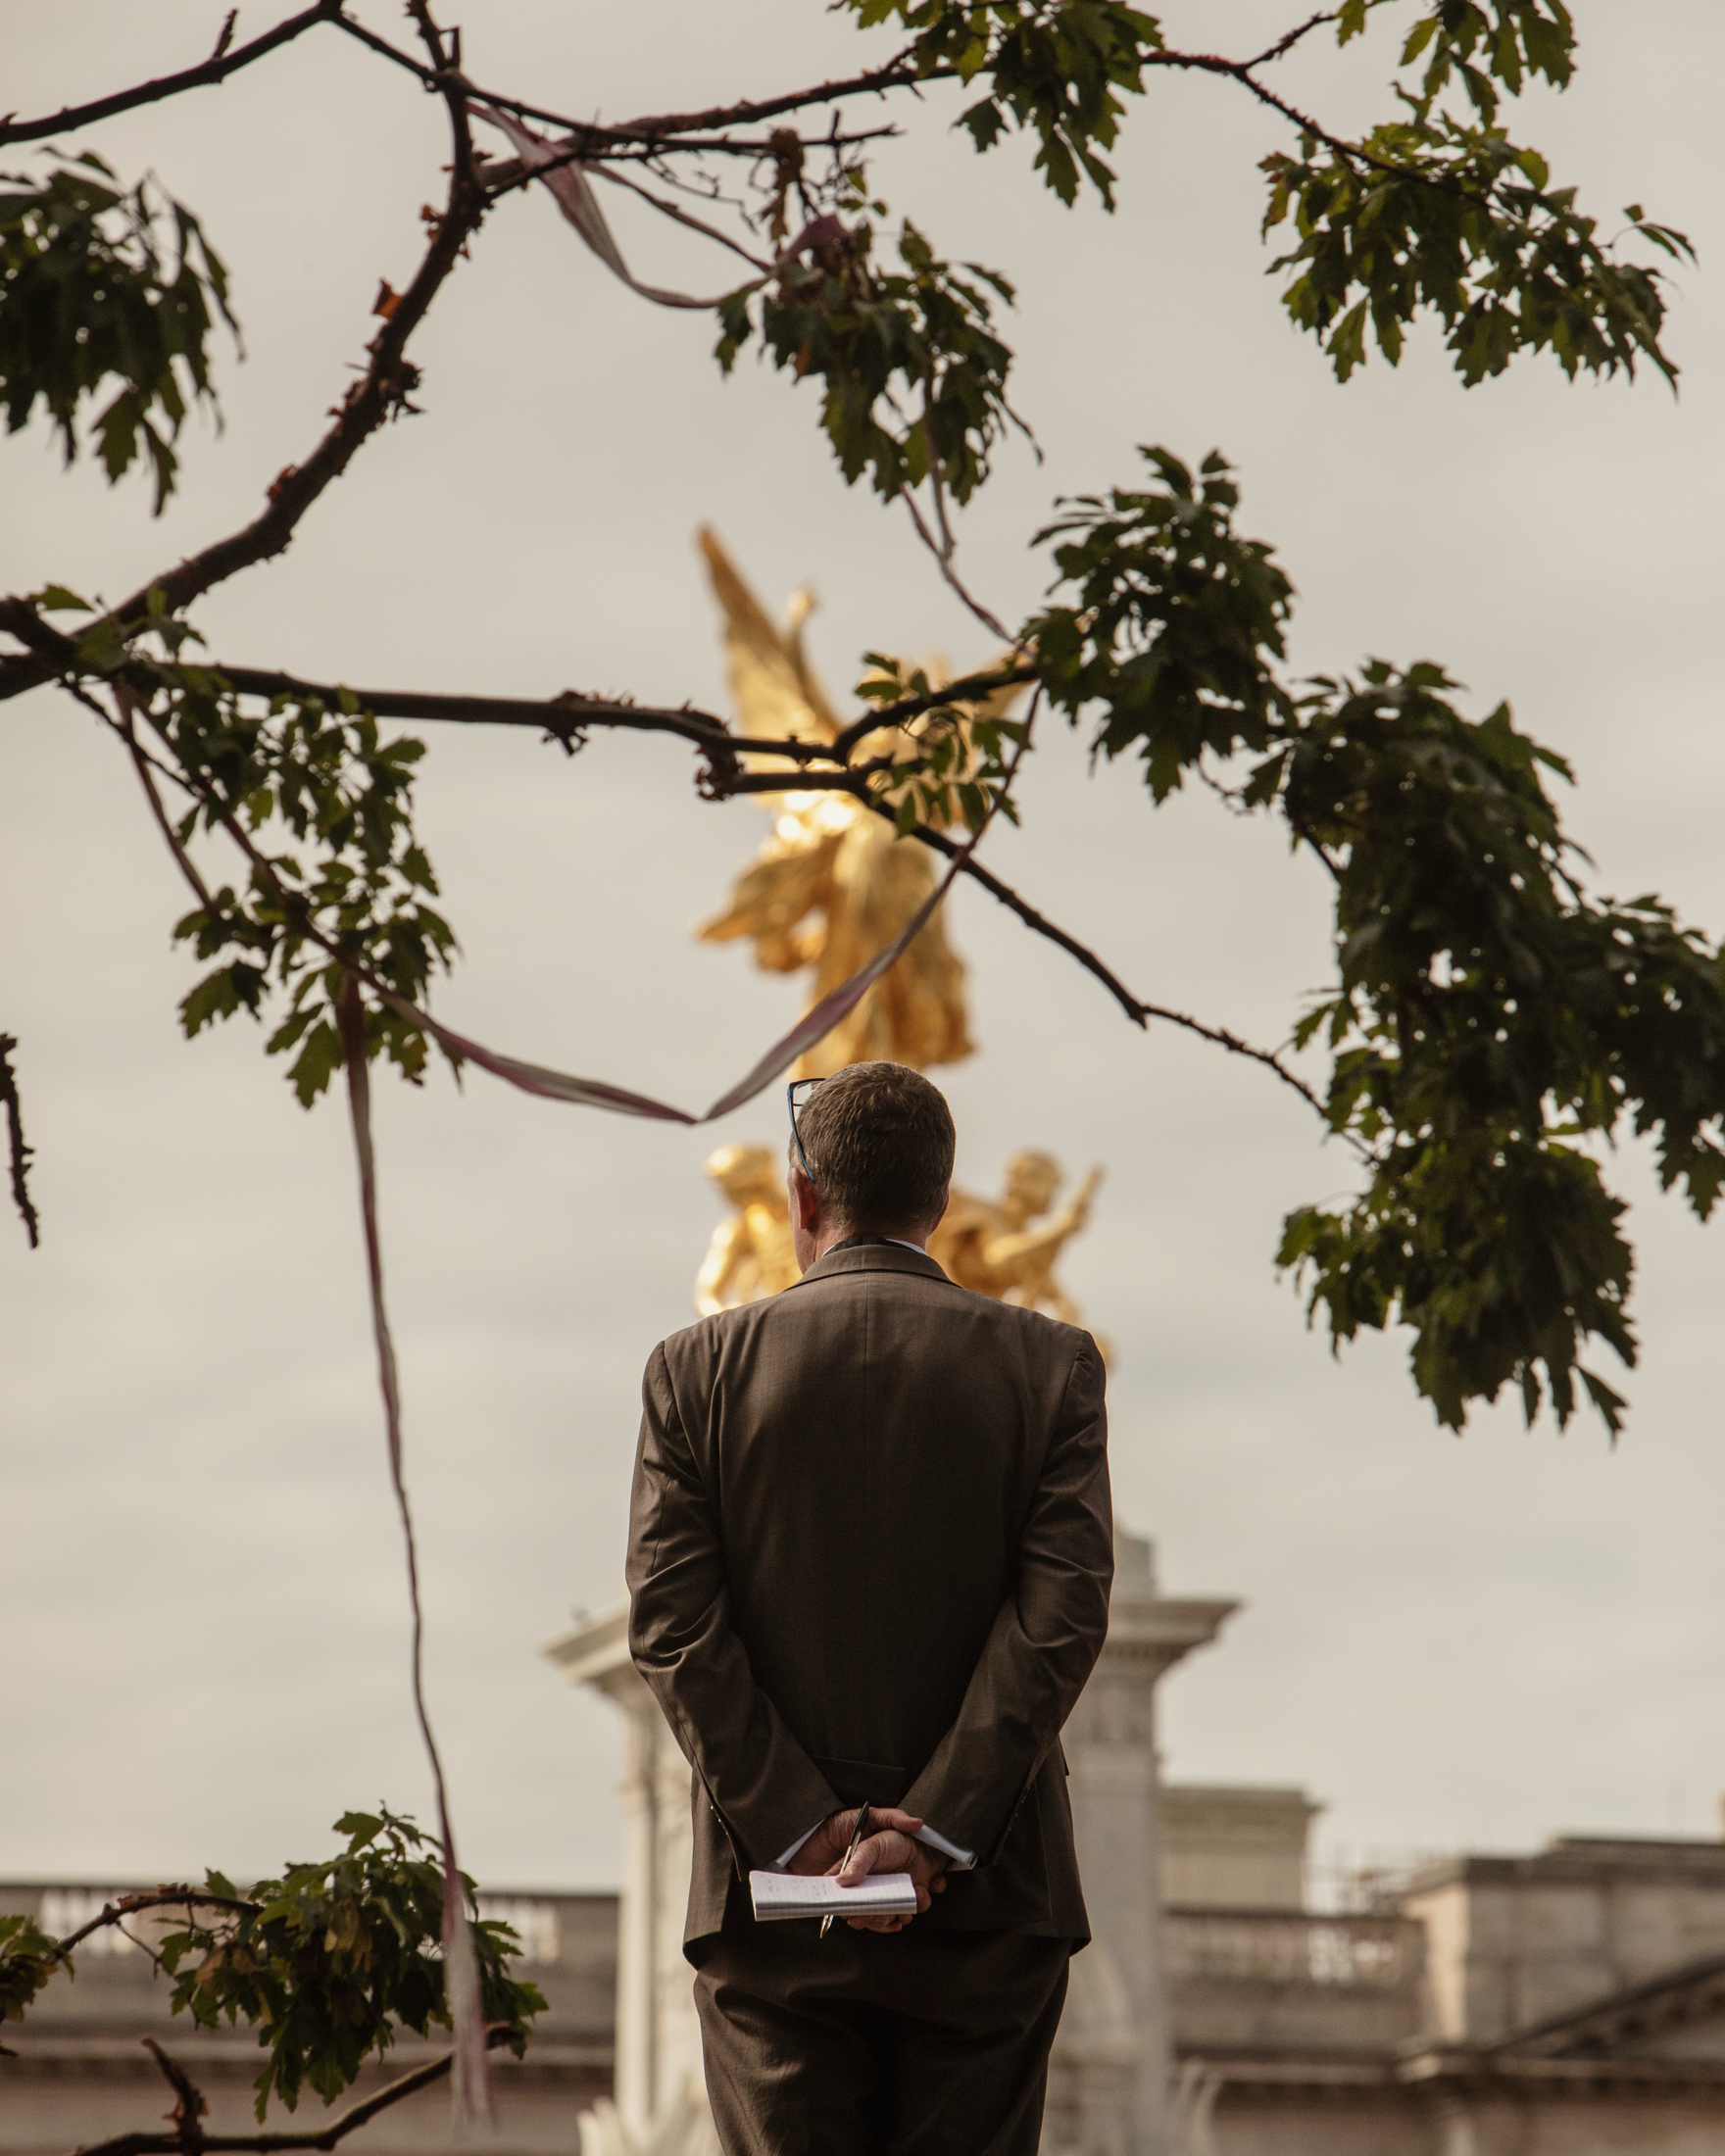 Man looking towards Victoria Memorial during Queen Elizabeth II's funeral